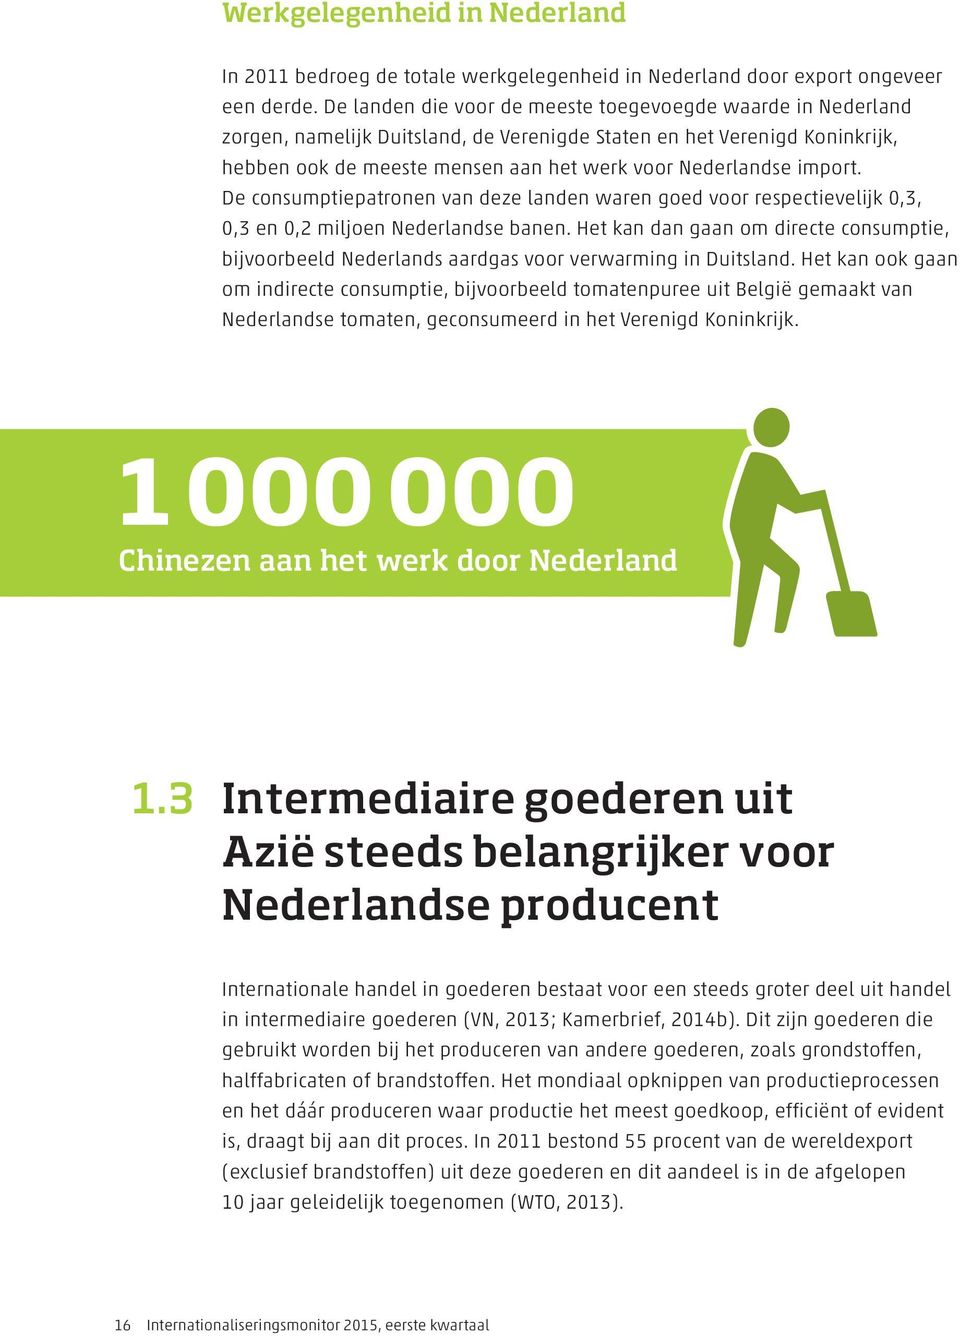 import. De consumptiepatronen van deze landen waren goed voor respectievelijk 0,3, 0,3 en 0,2 miljoen Nederlandse banen.